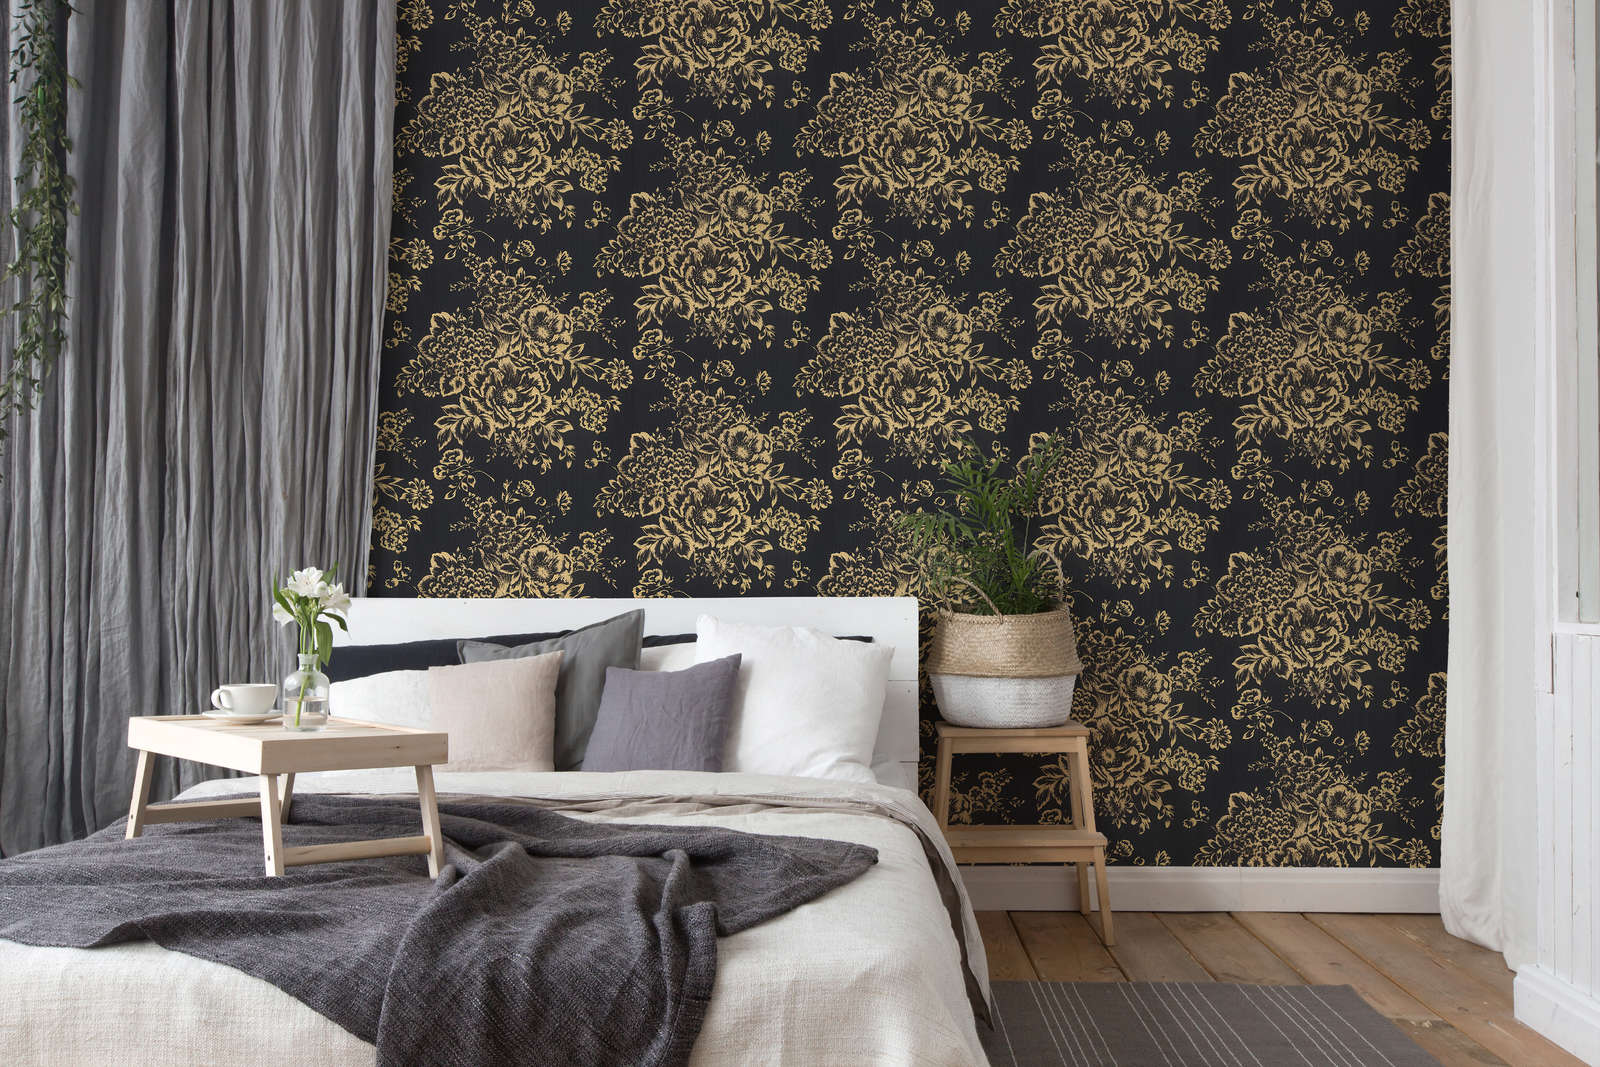             Textuurbehang met gouden bloemenpatroon - goud, zwart
        